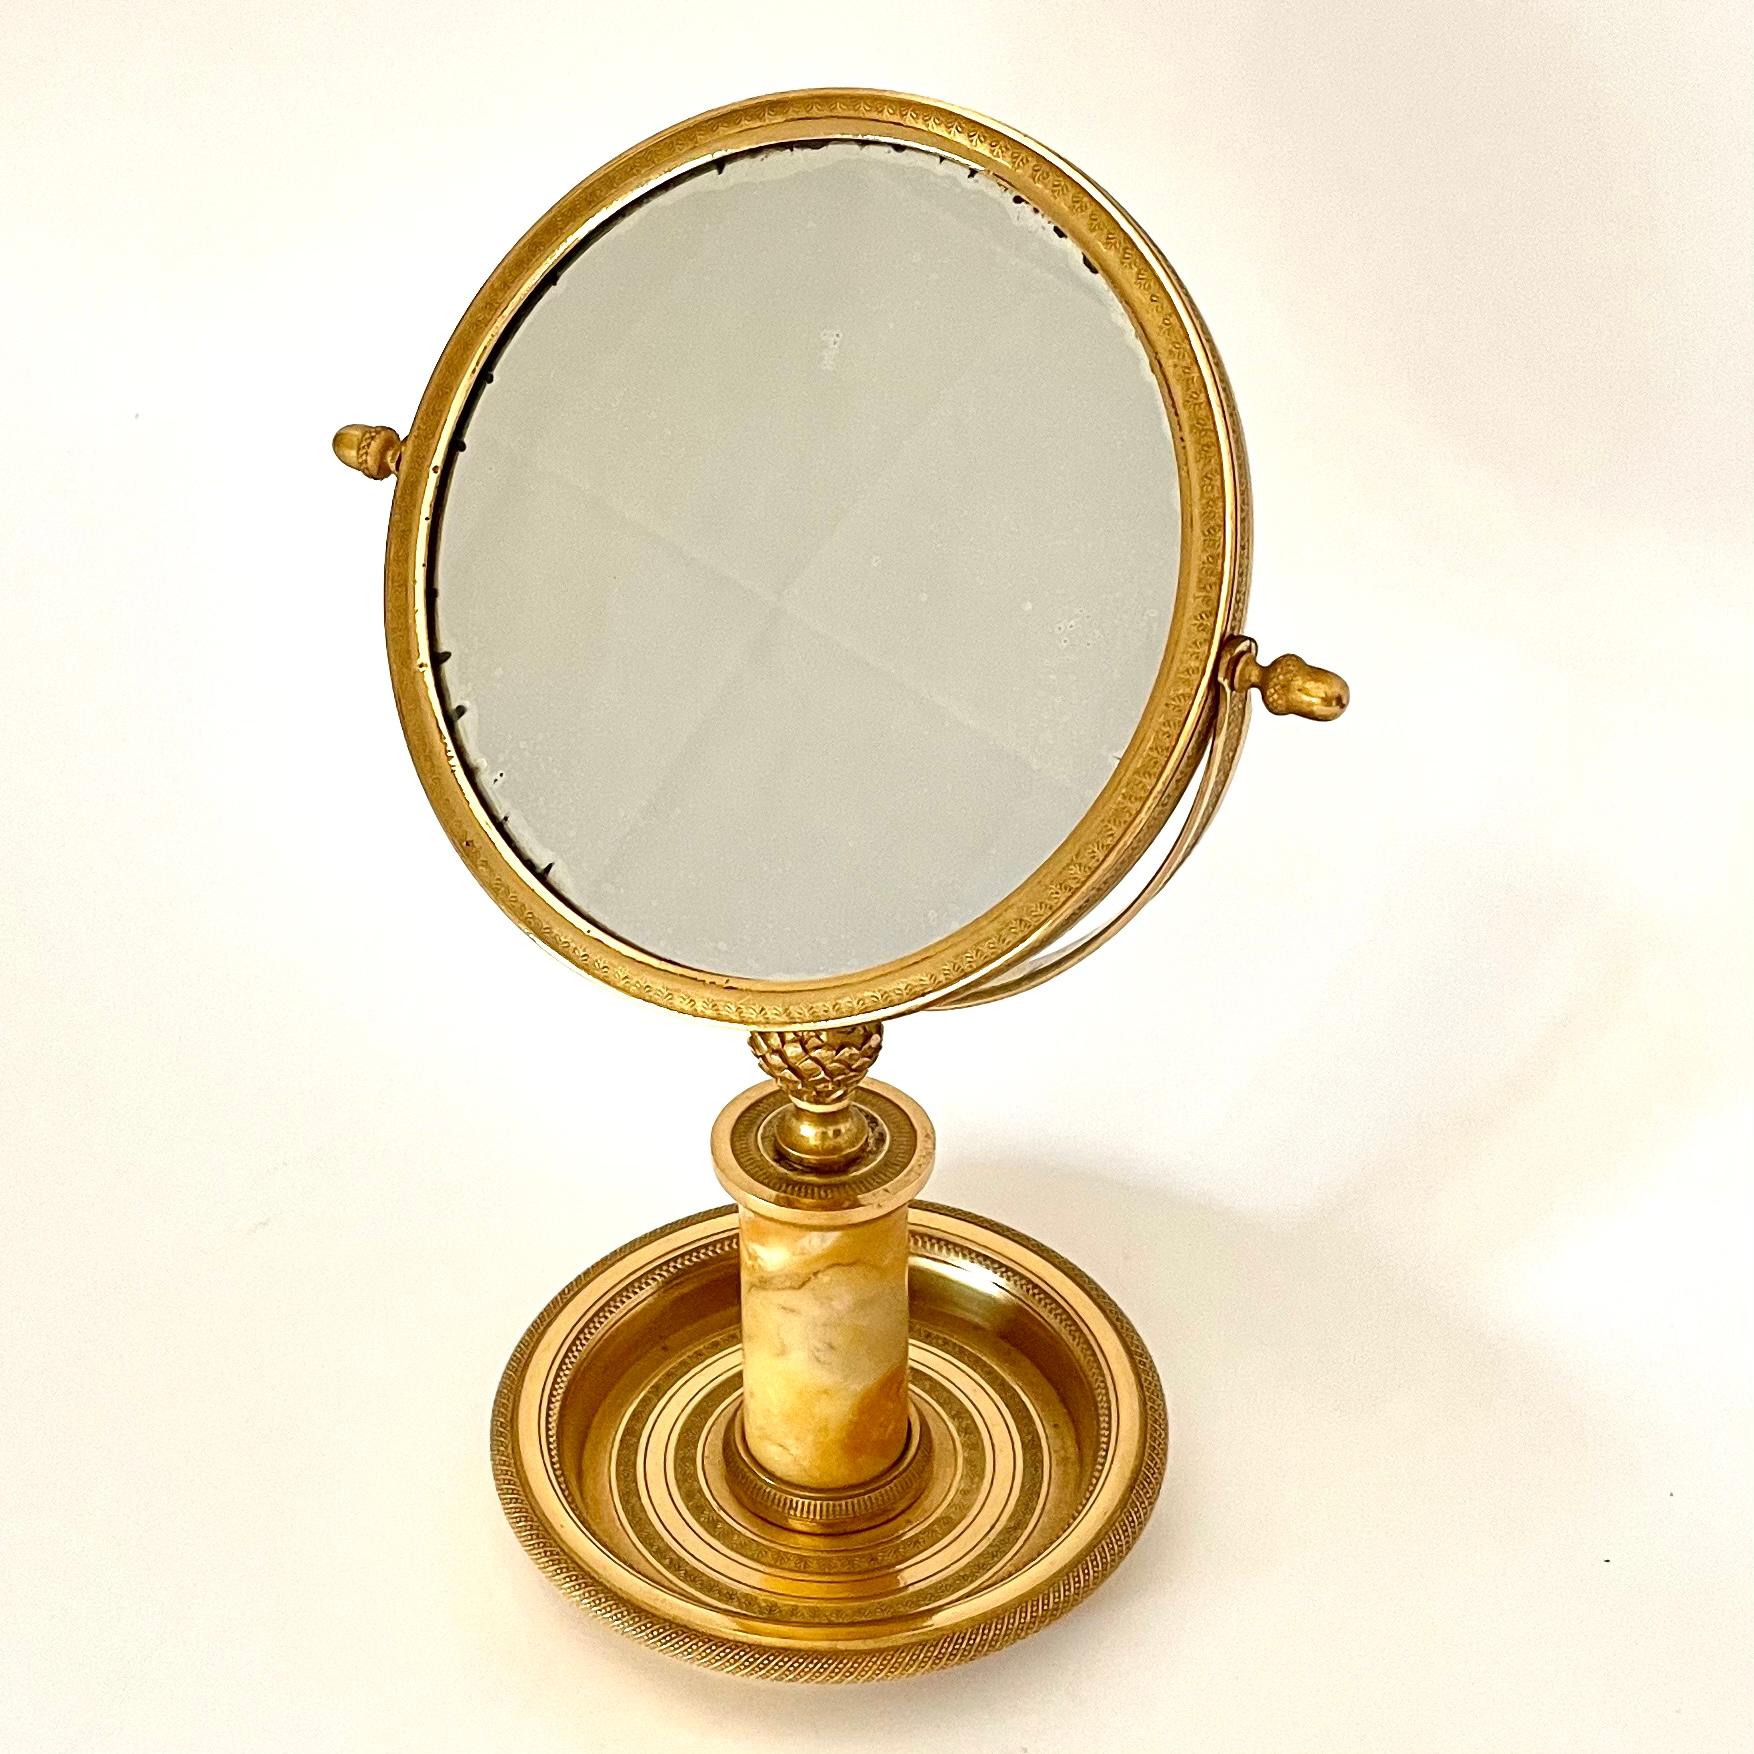 Eleganter Tischspiegel aus vergoldeter Bronze und mit einem Marmorkern. Sehr schöne Originalvergoldung mit schönen Details. Französisches Kaiserreich ab den 1820er Jahren. Gute Größe für den Schminktisch oder als schöner Spiegel im Flur.

Alters-